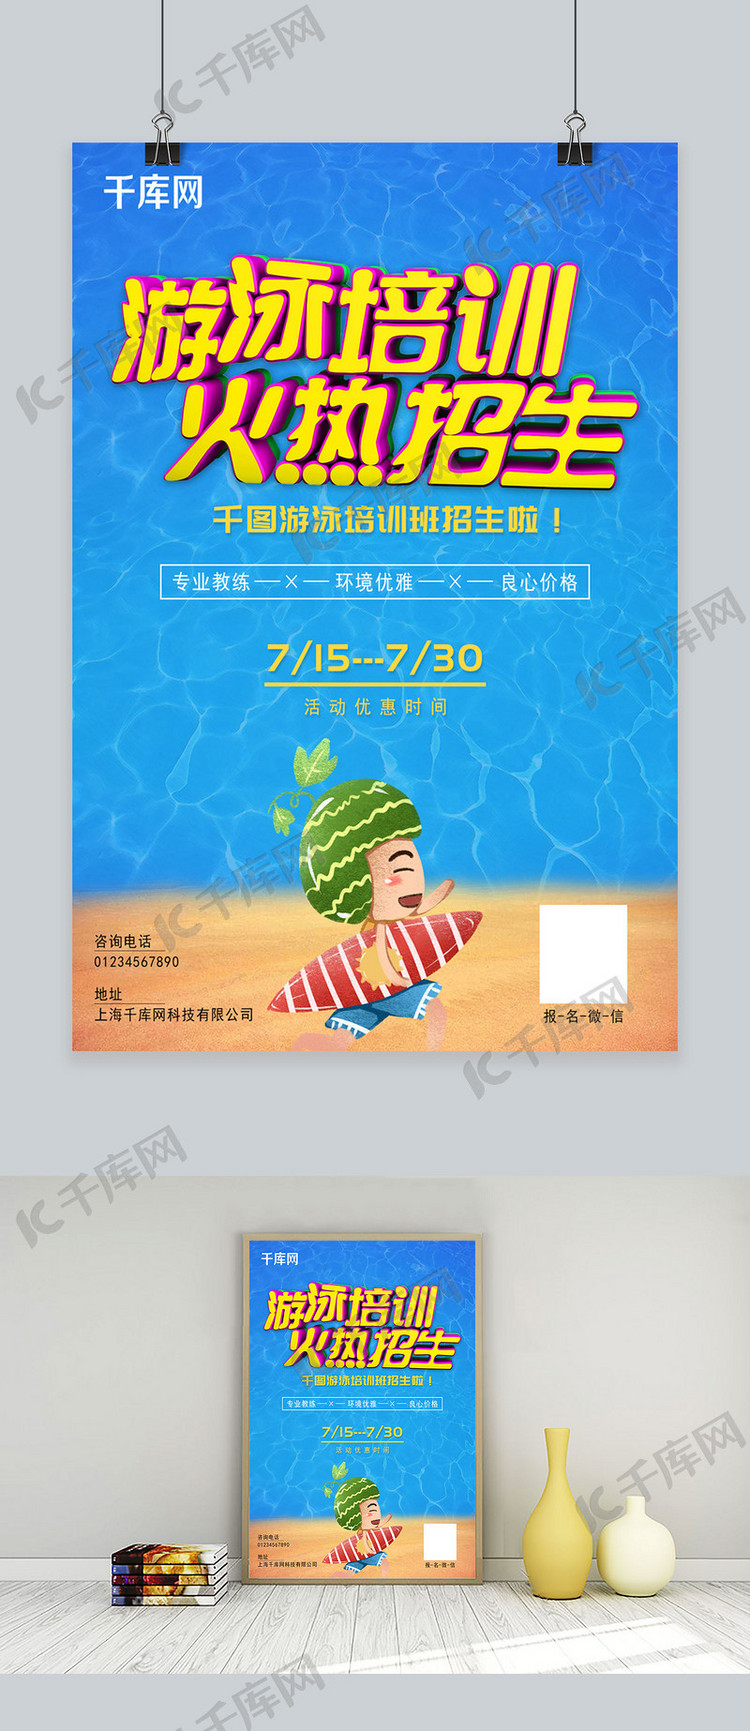 夏季游泳班培训火热招生宣传海报